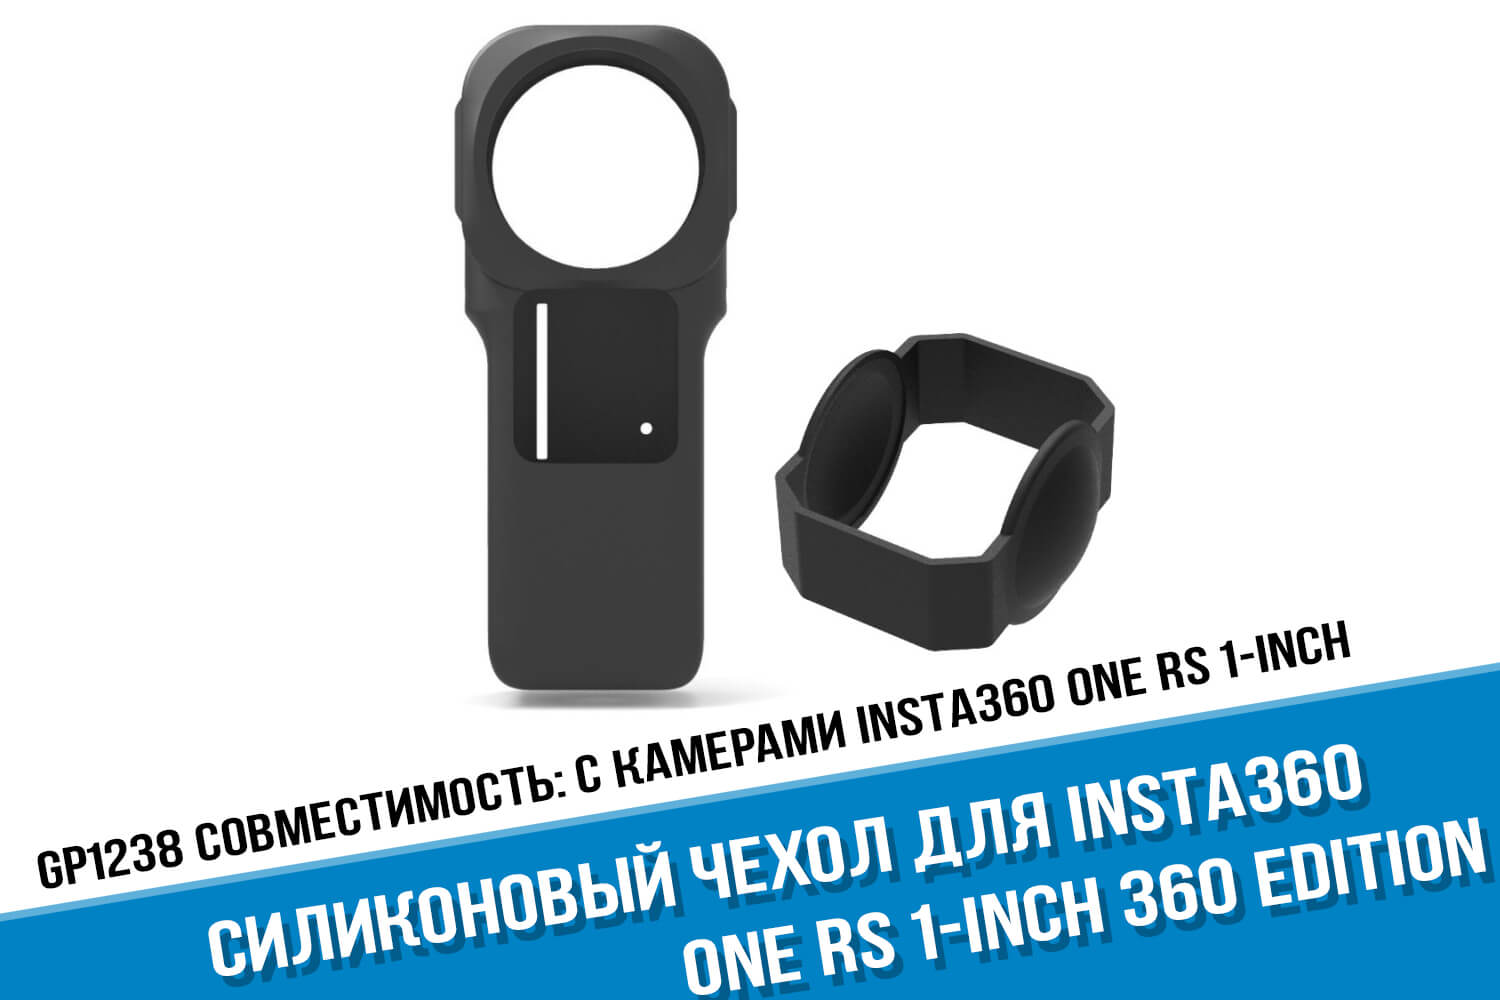 Черный силиконовый чехол Insta360 One RS 1-Inch Edition